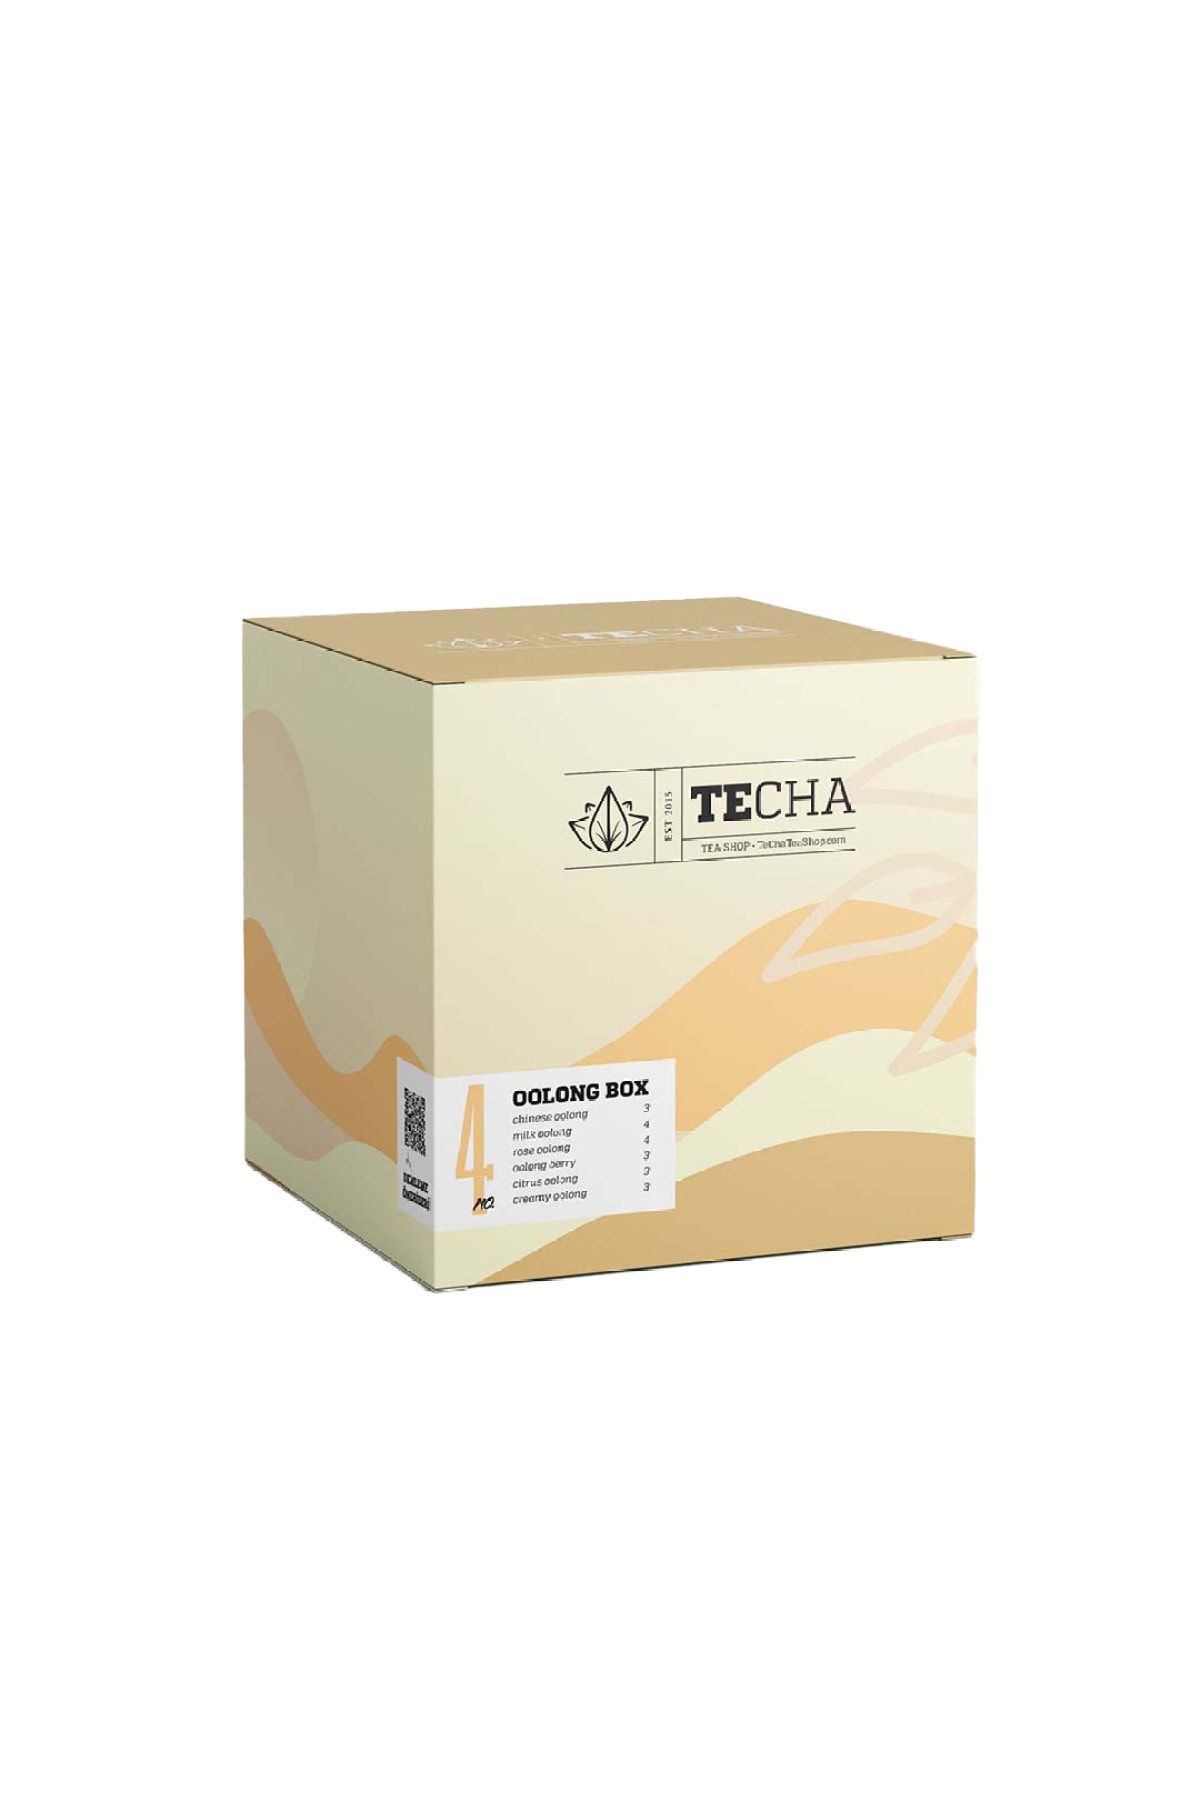 Te Cha Tea Boxes No:4 Oolong Box